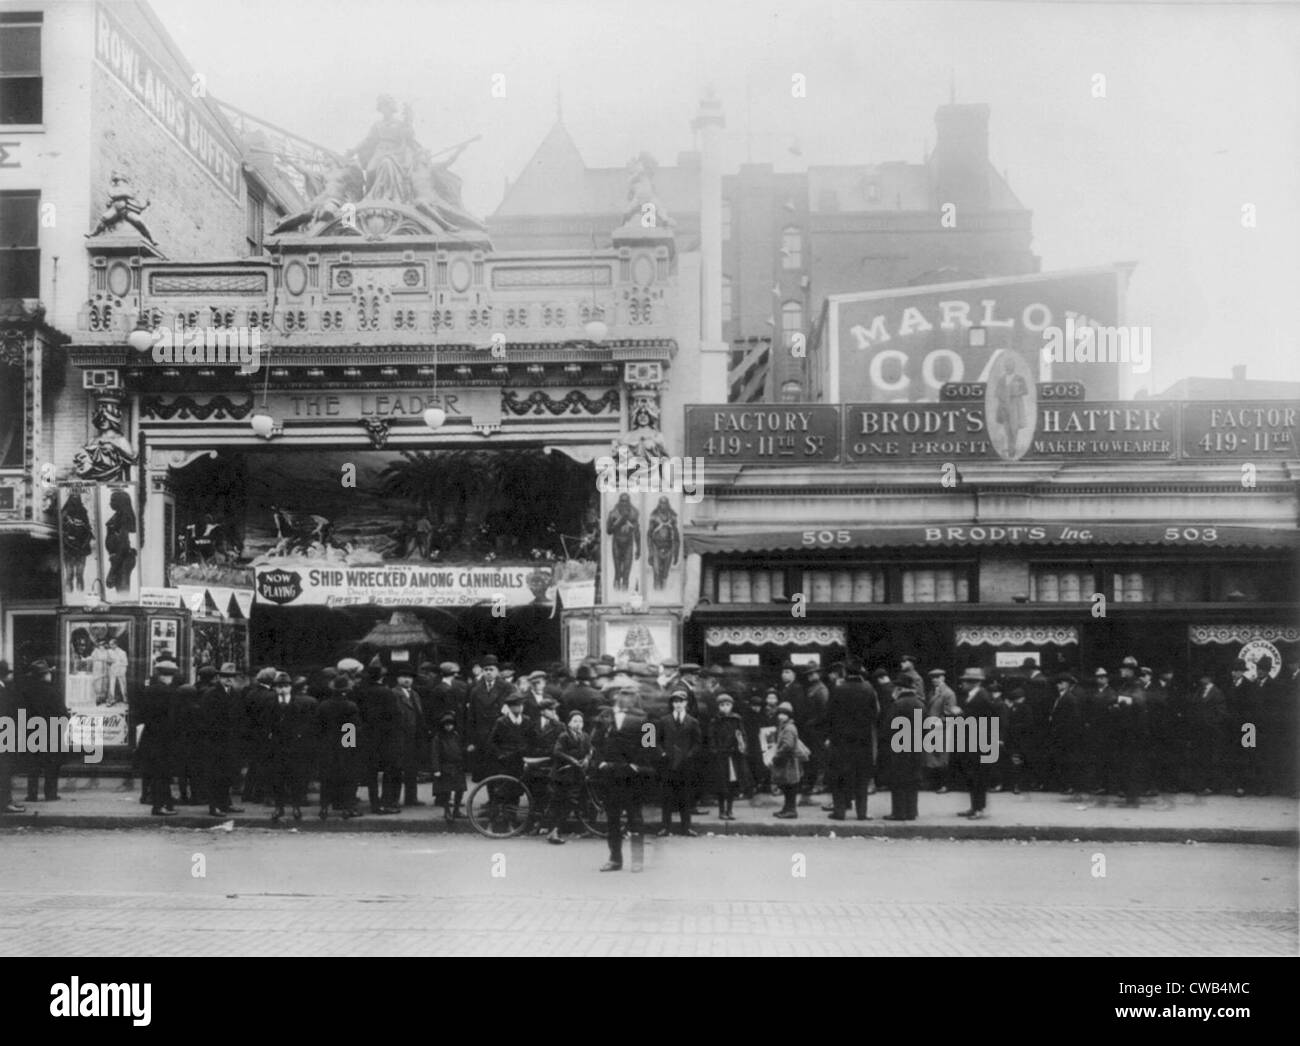 El cine, el teatro, el líder de la Lujuria mostrando náufragos entre caníbales, Washington DC., fotografía de 1920. Foto de stock